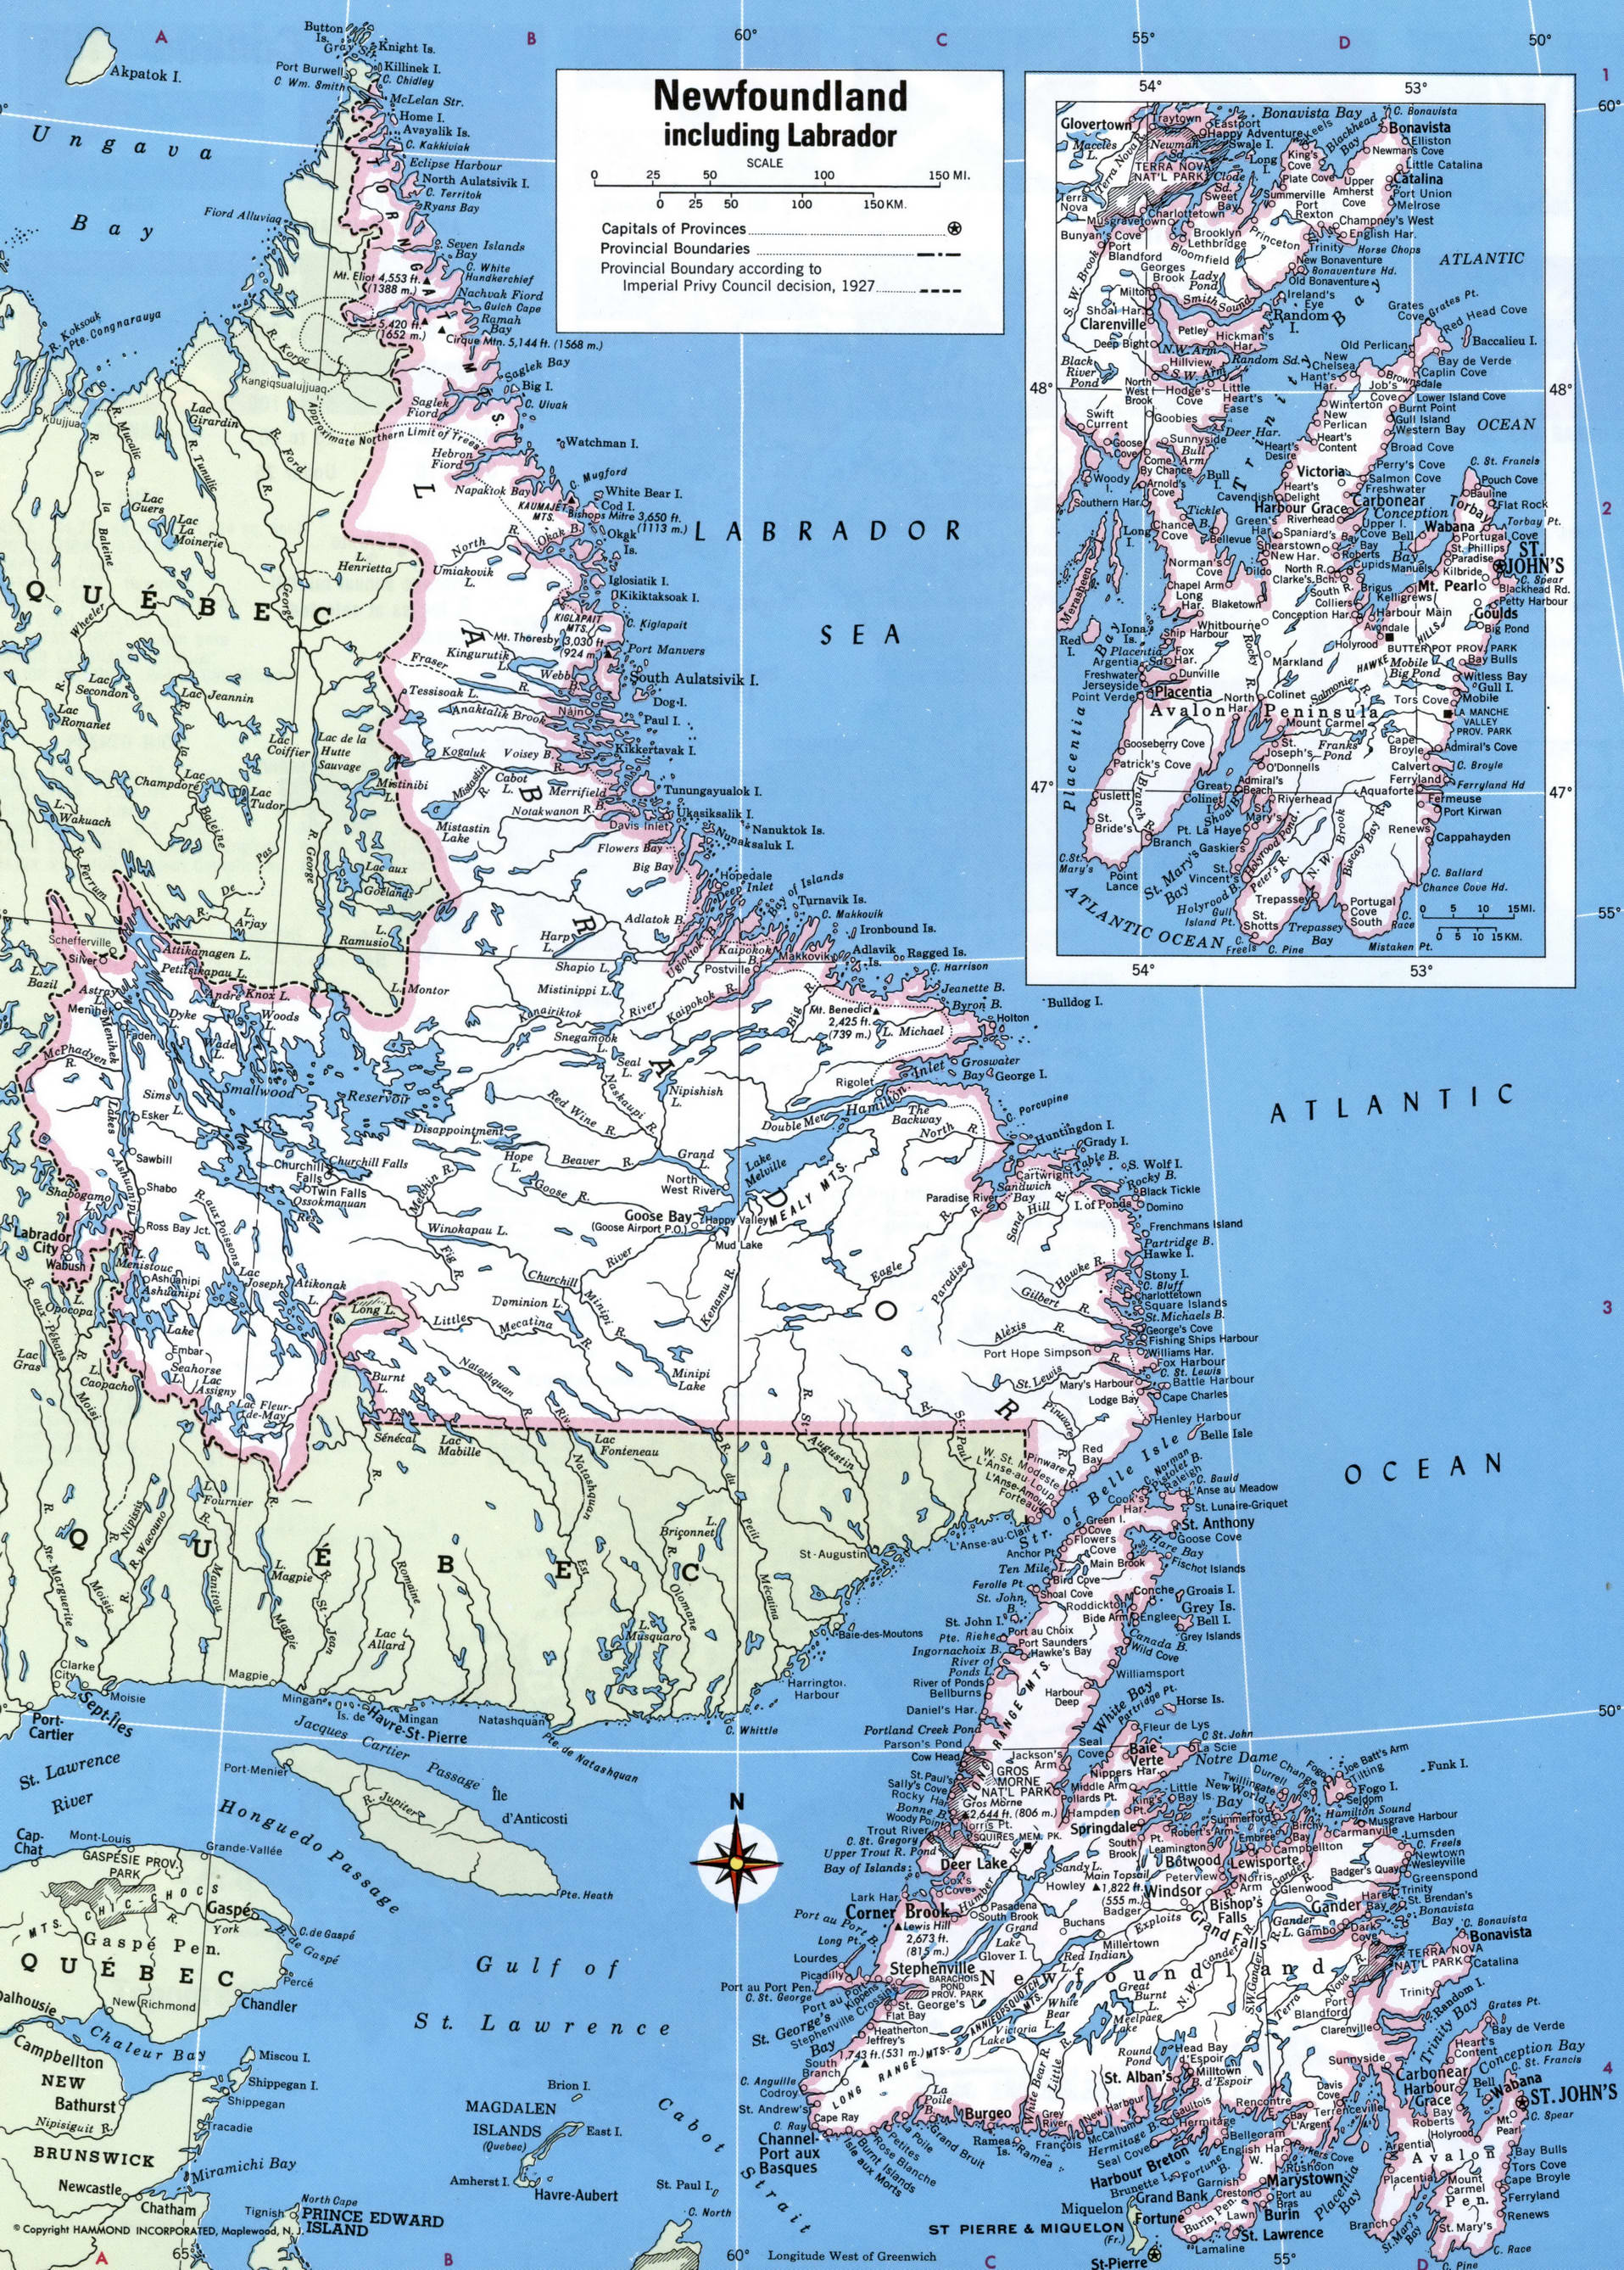 Newfoundland including Labrador map regions